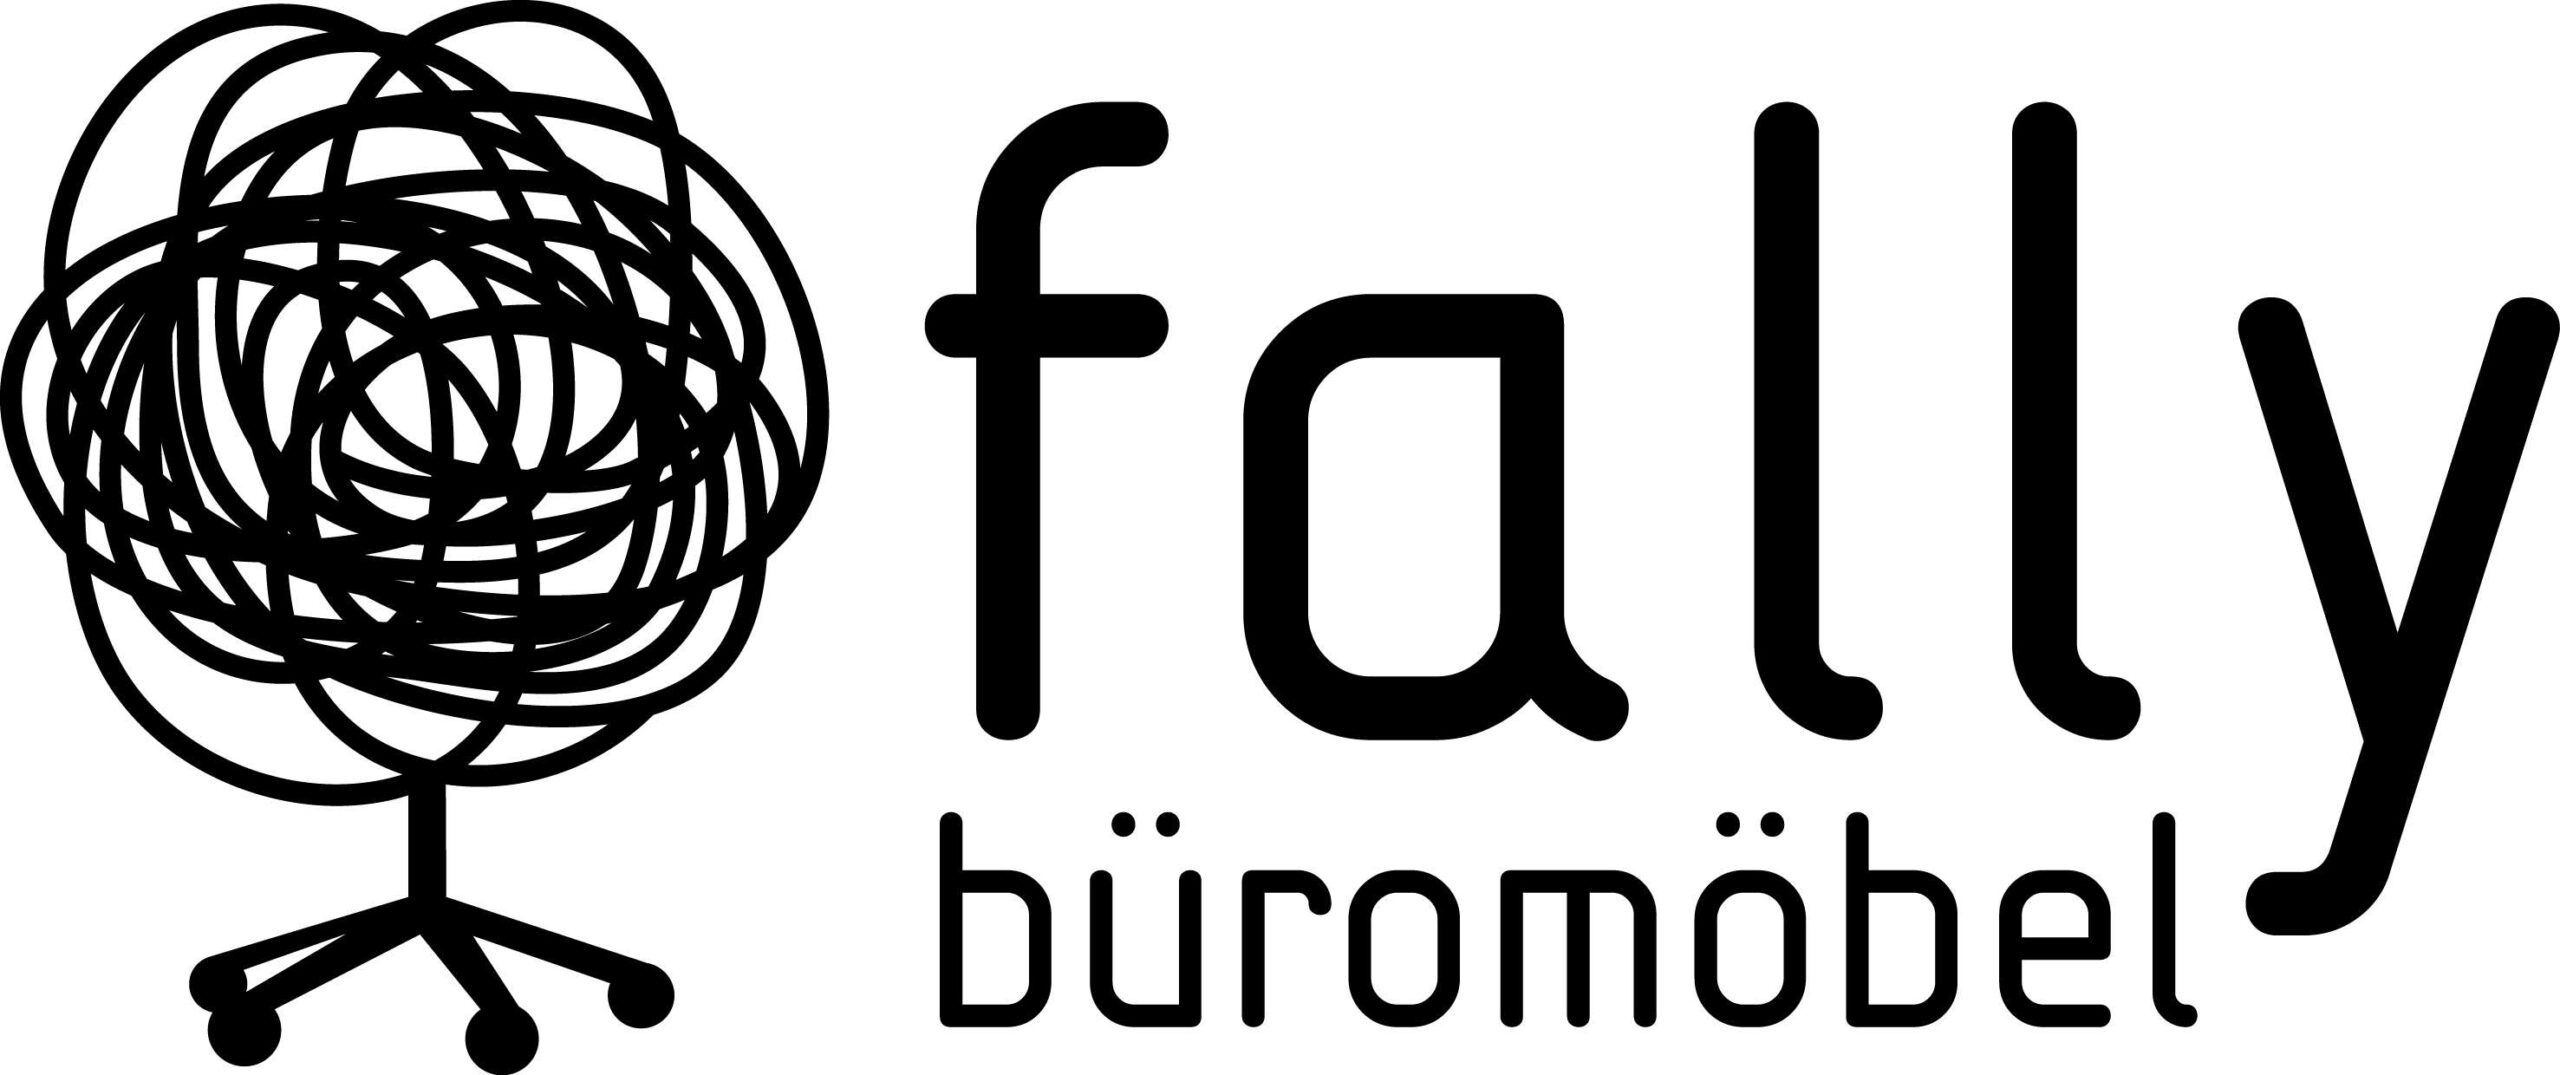 fally-logo